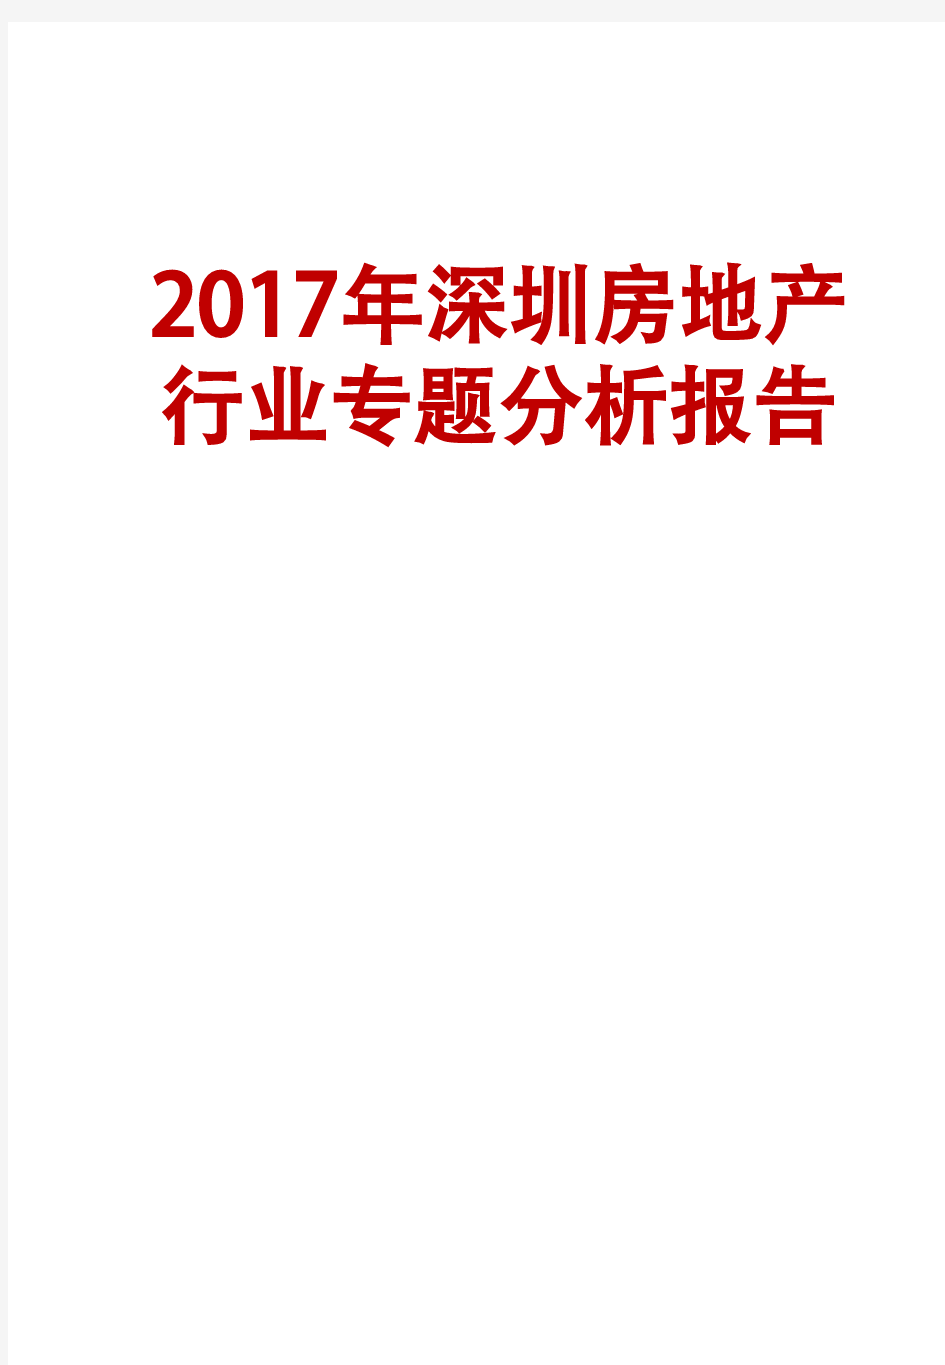 2017年深圳房地产行业专题分析报告